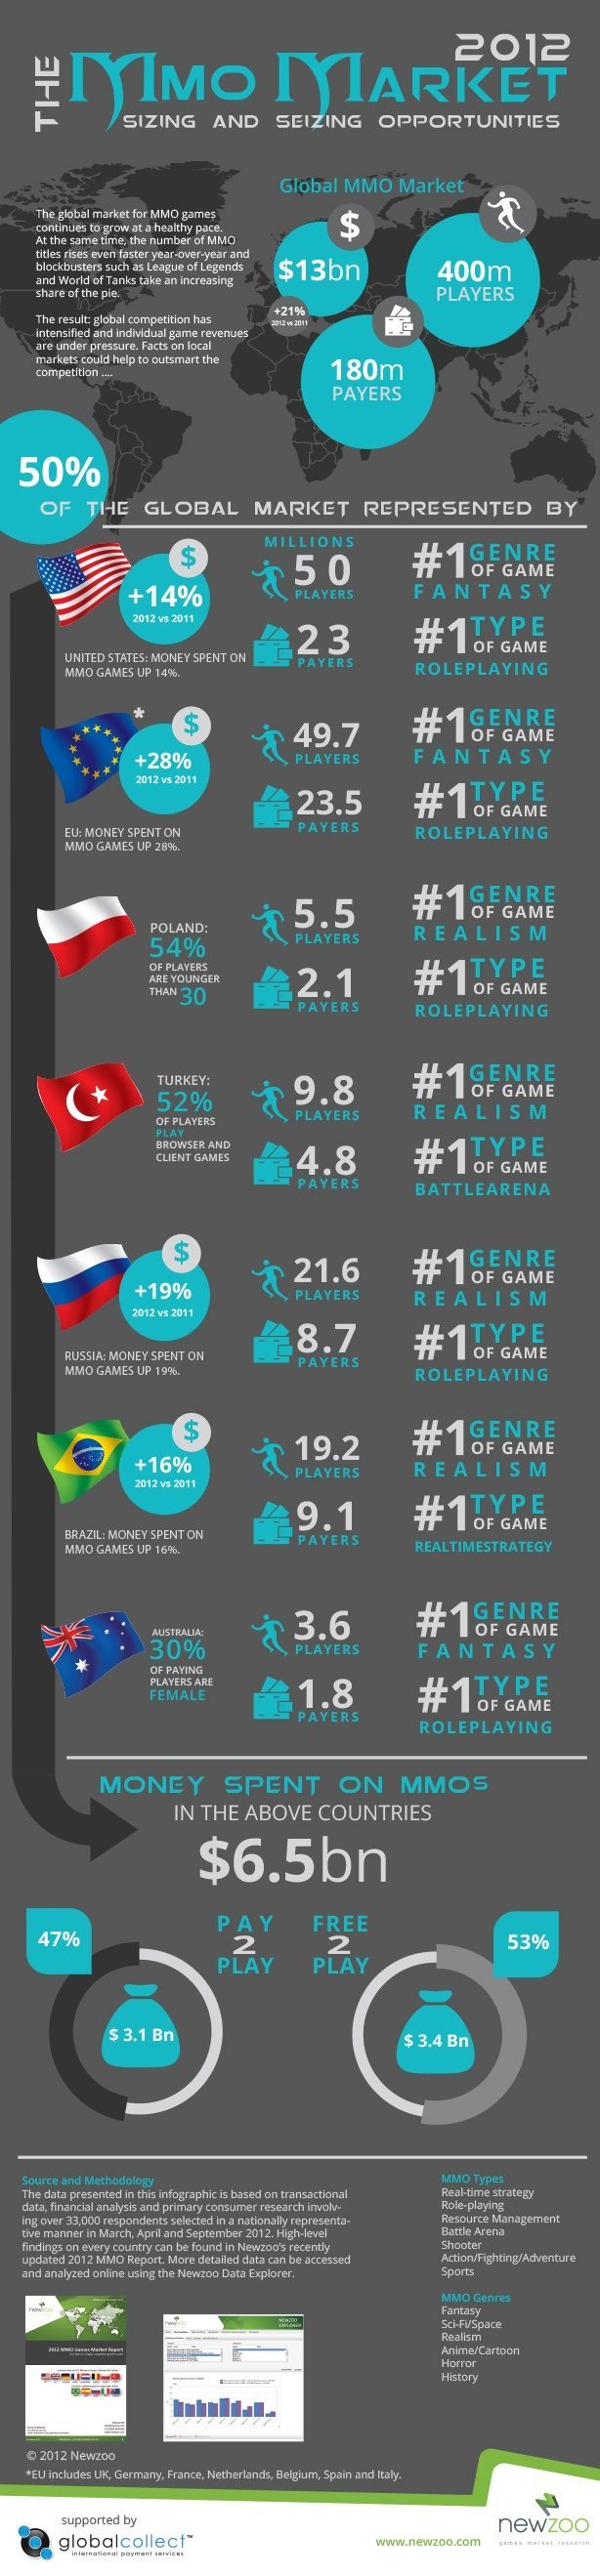 Infografika przedstawiająca stan połowy rynku gier MMO w roku 2012 (źródło: newzoo.com) - Światowy rynek gier MMO rośnie i ma się dobrze - wiadomość - 2012-12-14